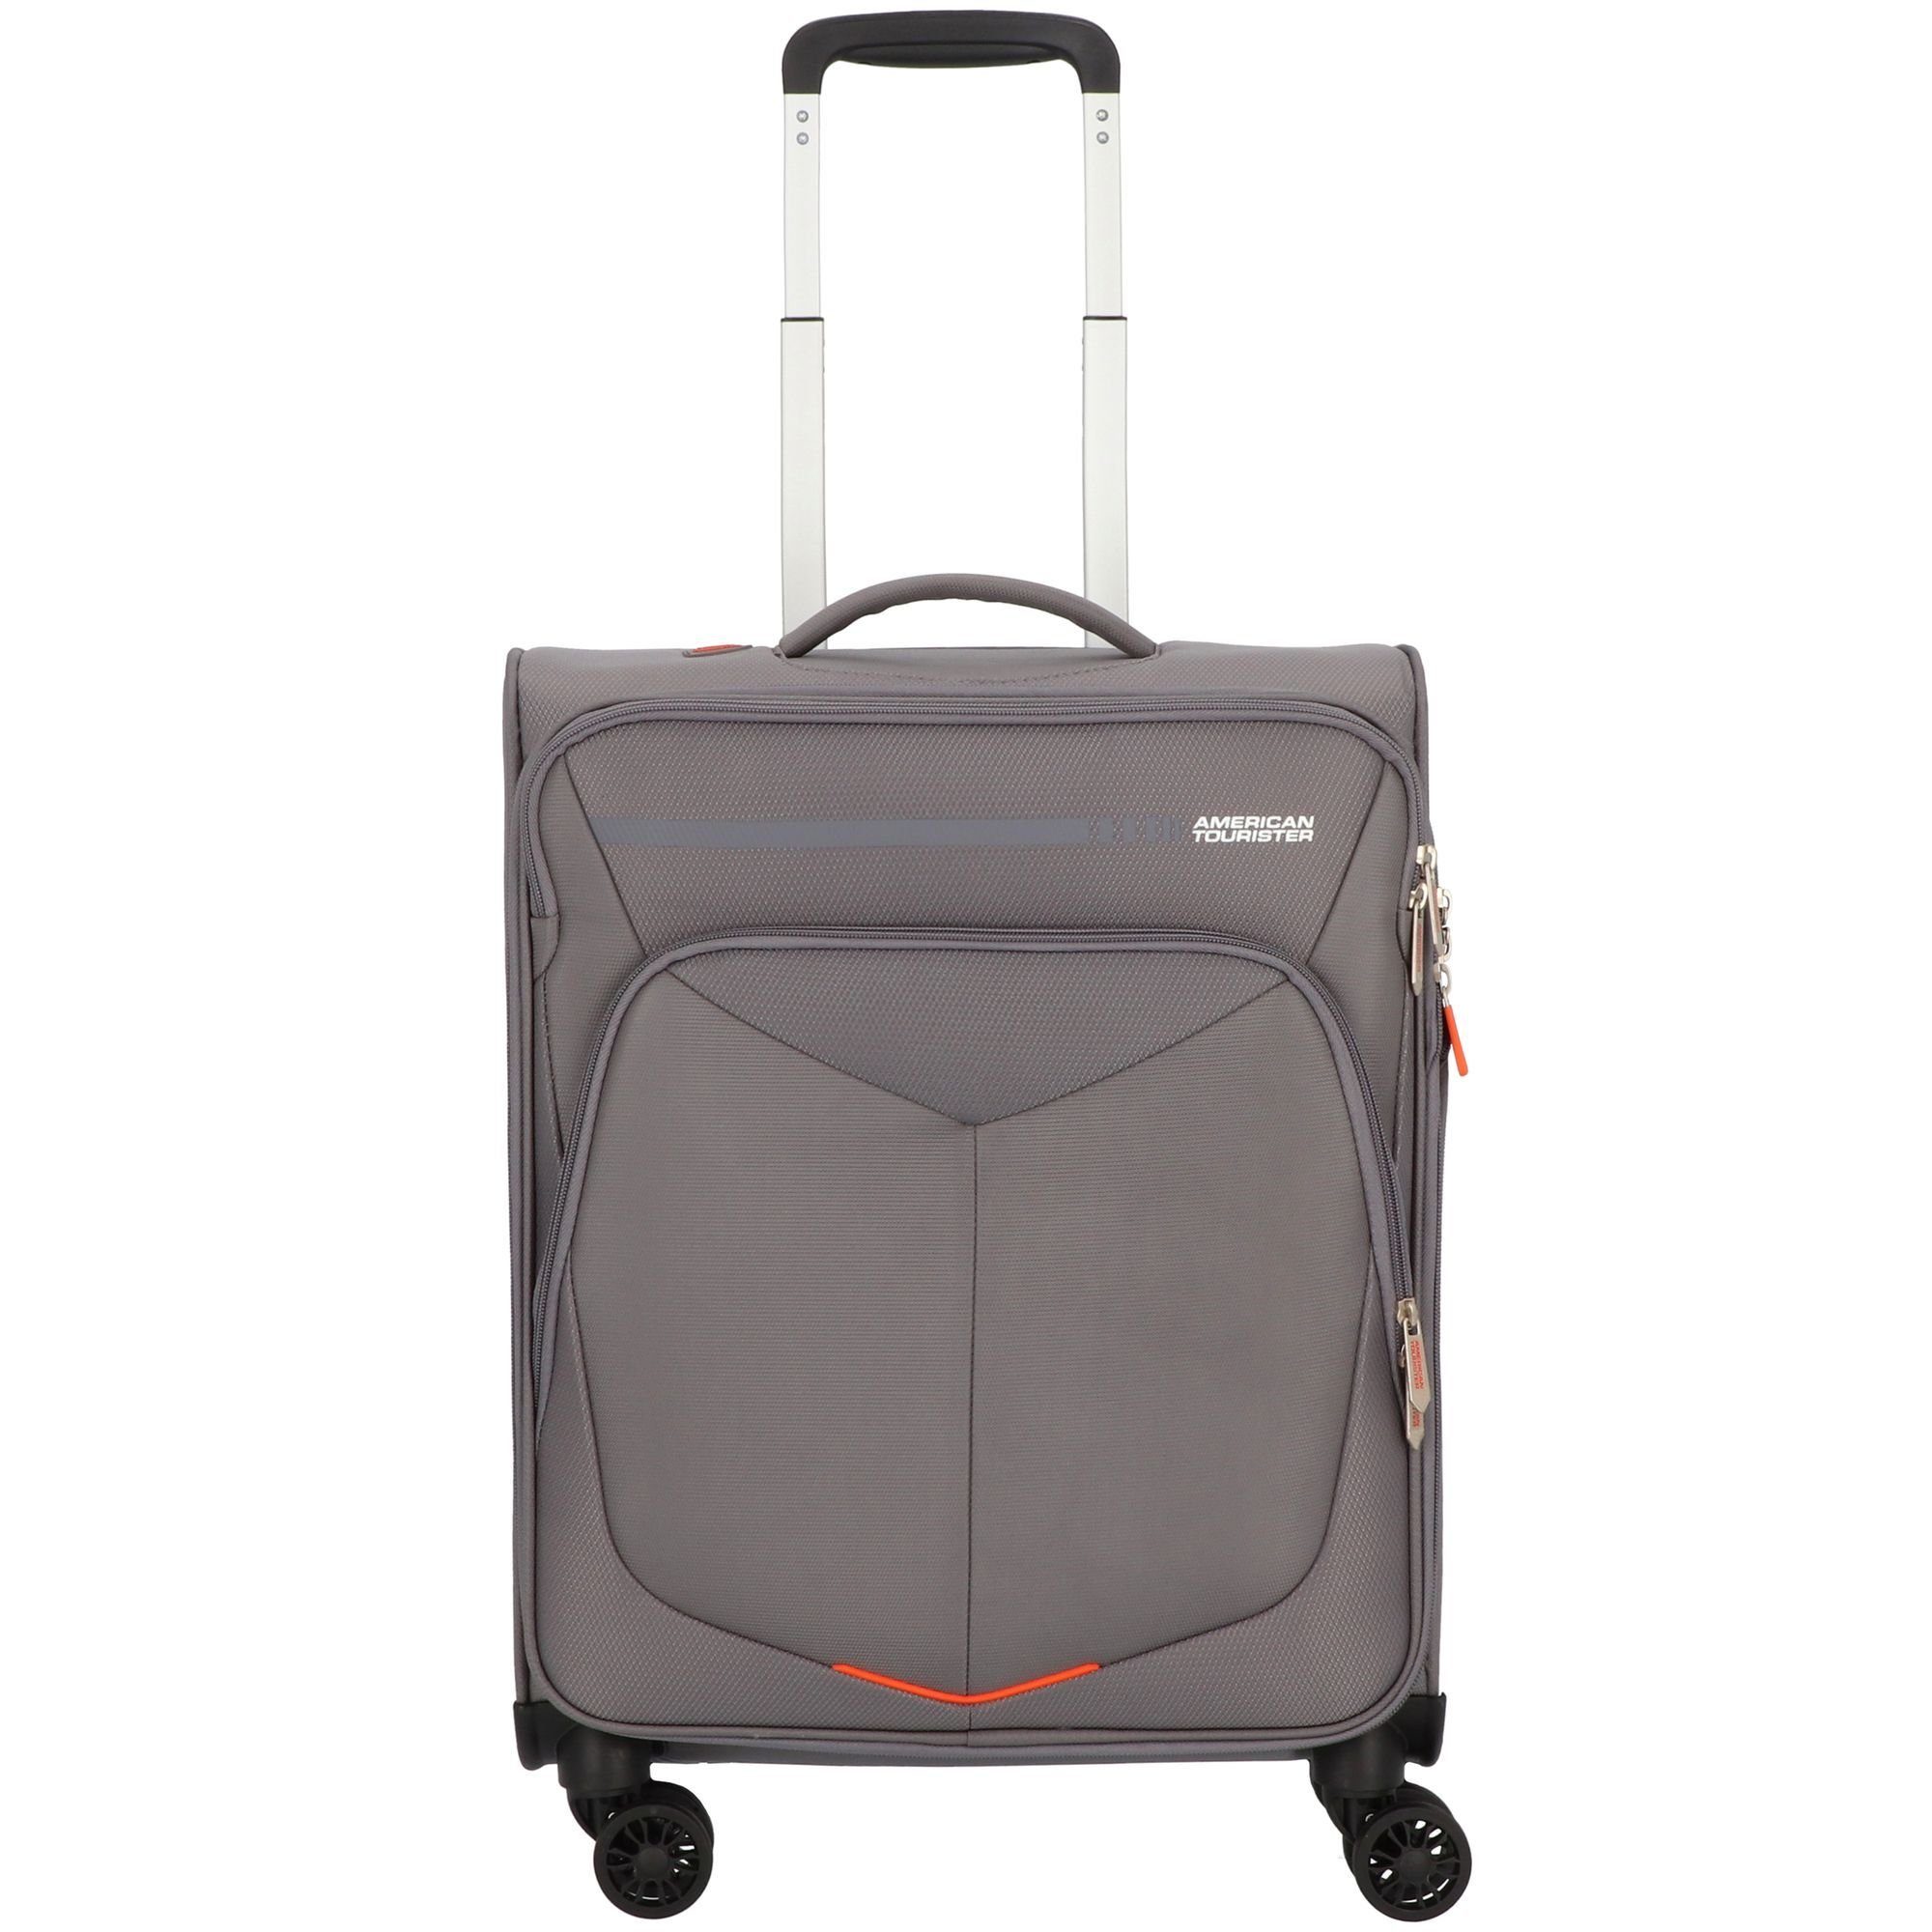 American Tourister® Handgepäck-Trolley Summerfunk, 4 Rollen, Polyester titanium grey | Handgepäck-Koffer